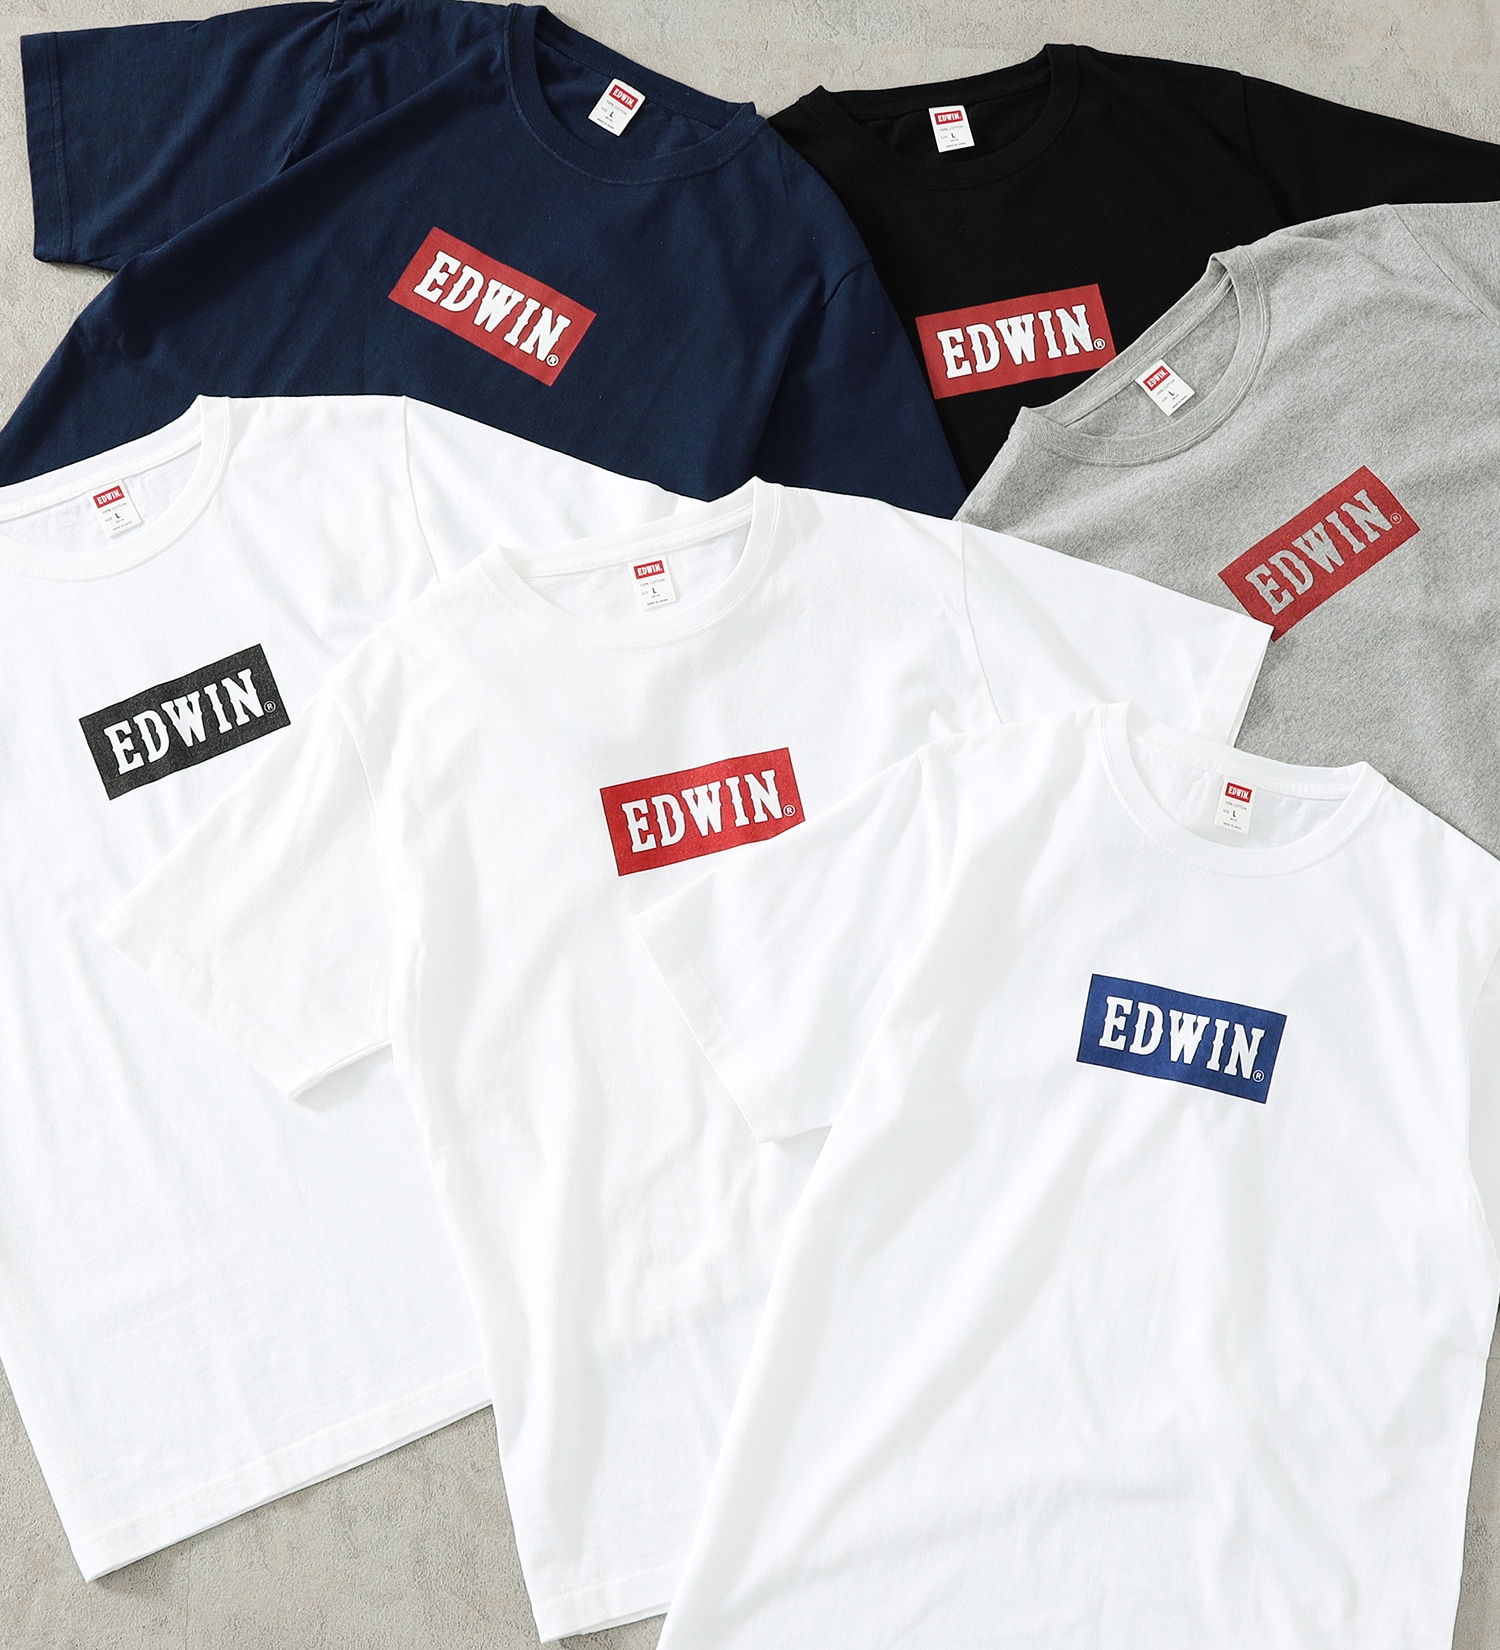 EDWIN(エドウイン)の【SALE】【コンセプトショップ限定】EDWIN LOGO TEE|トップス/Tシャツ/カットソー/メンズ|ホワイト3